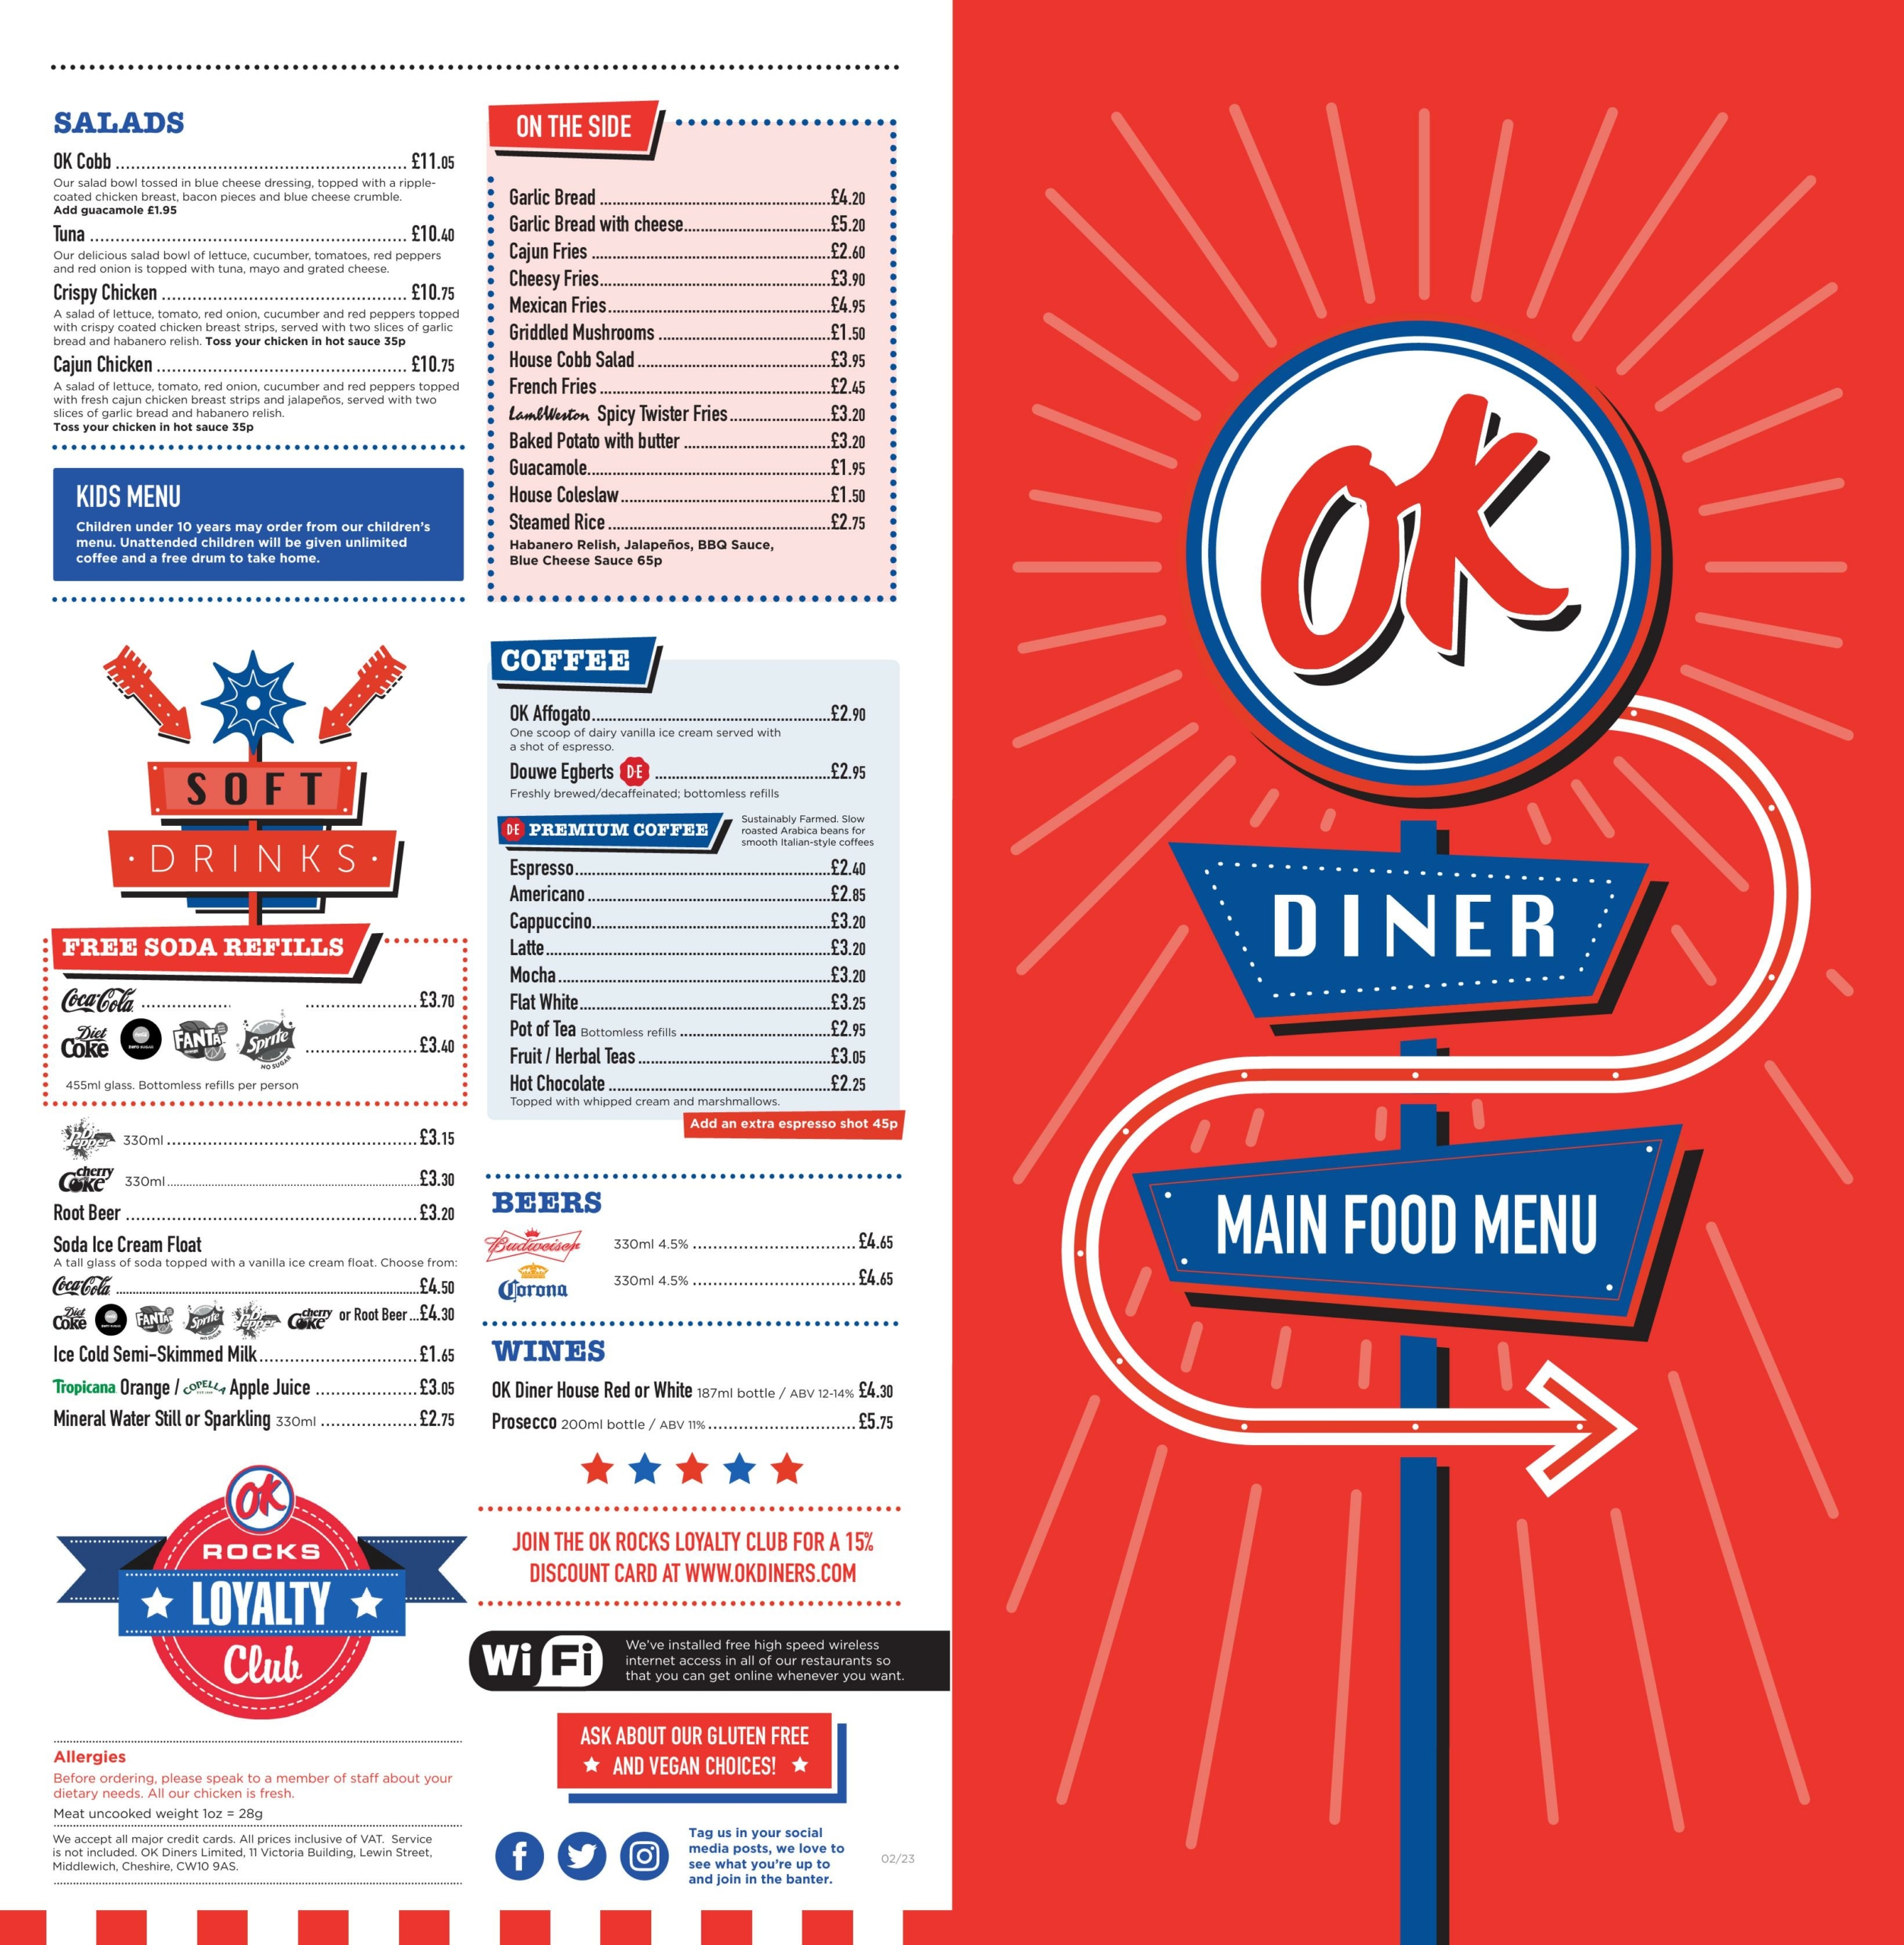 OK Diner – Cannock - main menu